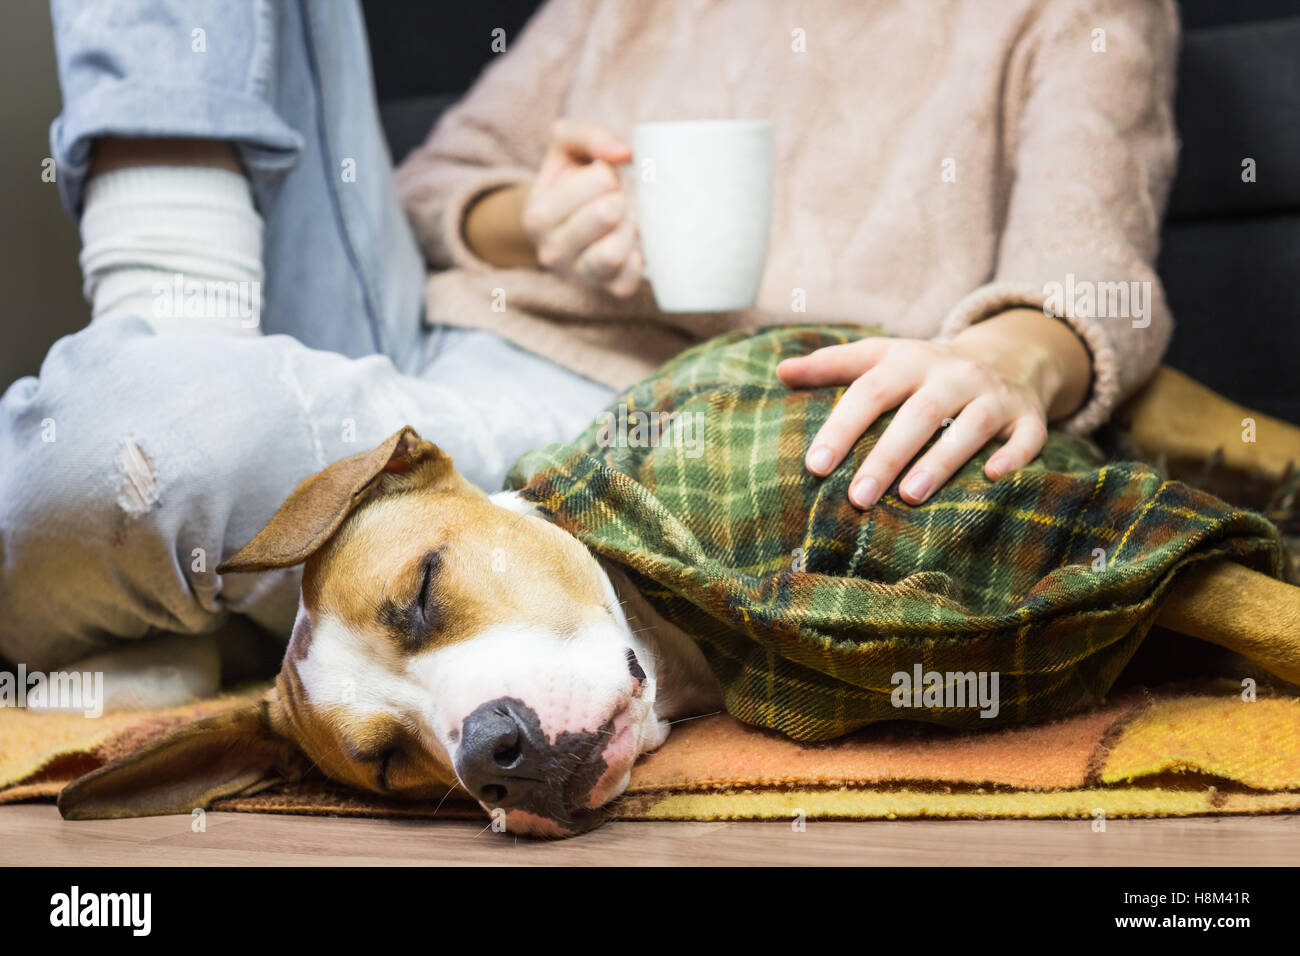 Mit menschlichen Hund in Decke schlafen. Kranke oder schlafende Welpen behandelt in Plaid zusammen mit weiblichen Menschen Stockfoto